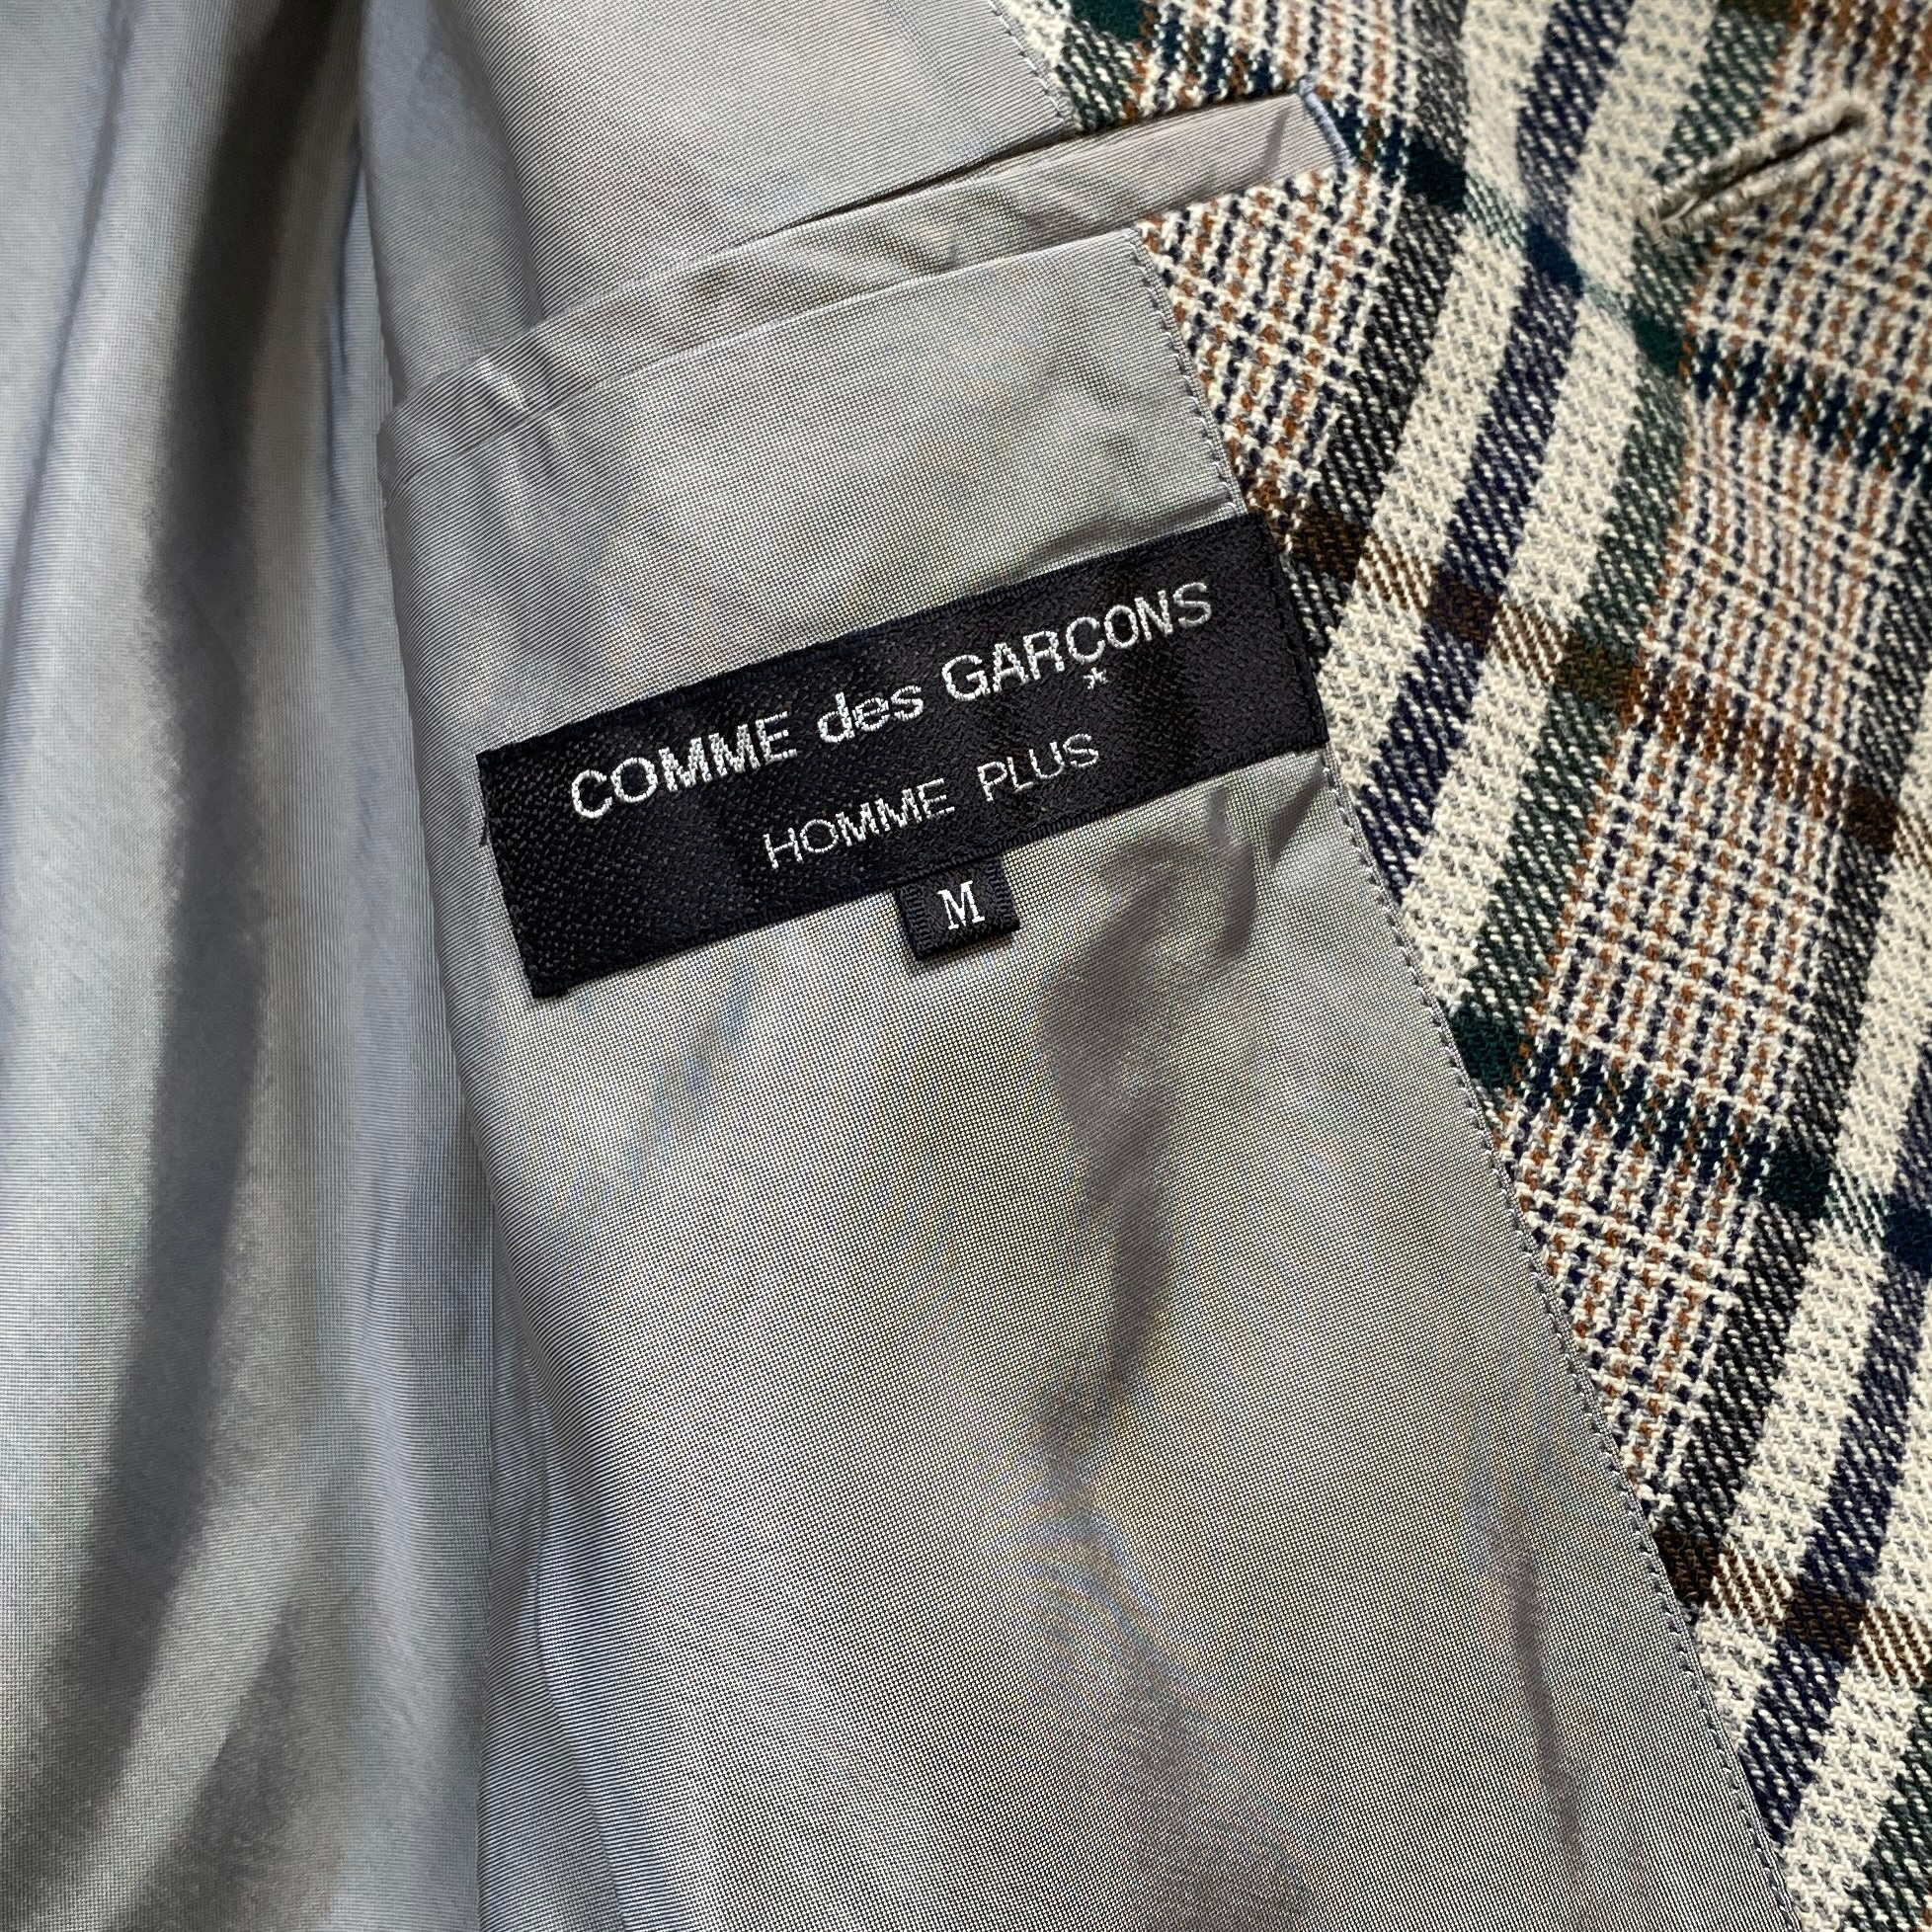 Comme des Garçons Homme Plus A/W 1997 Cropped Plaid Jacket - La Nausée -  fashion archive / retail shop